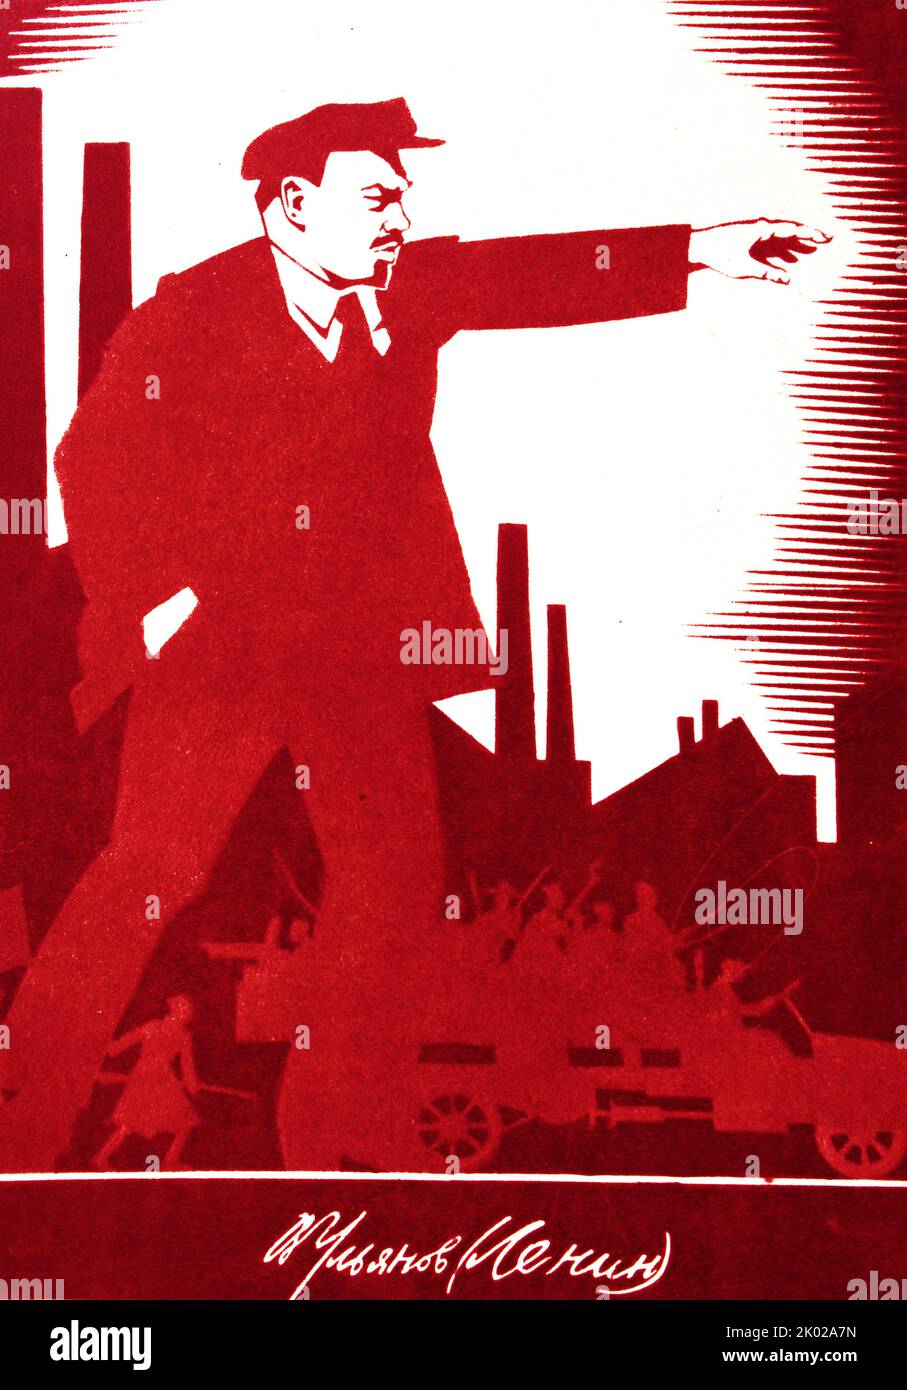 Affiche de propagande russe de Vladimir Lénine, 1924. Banque D'Images